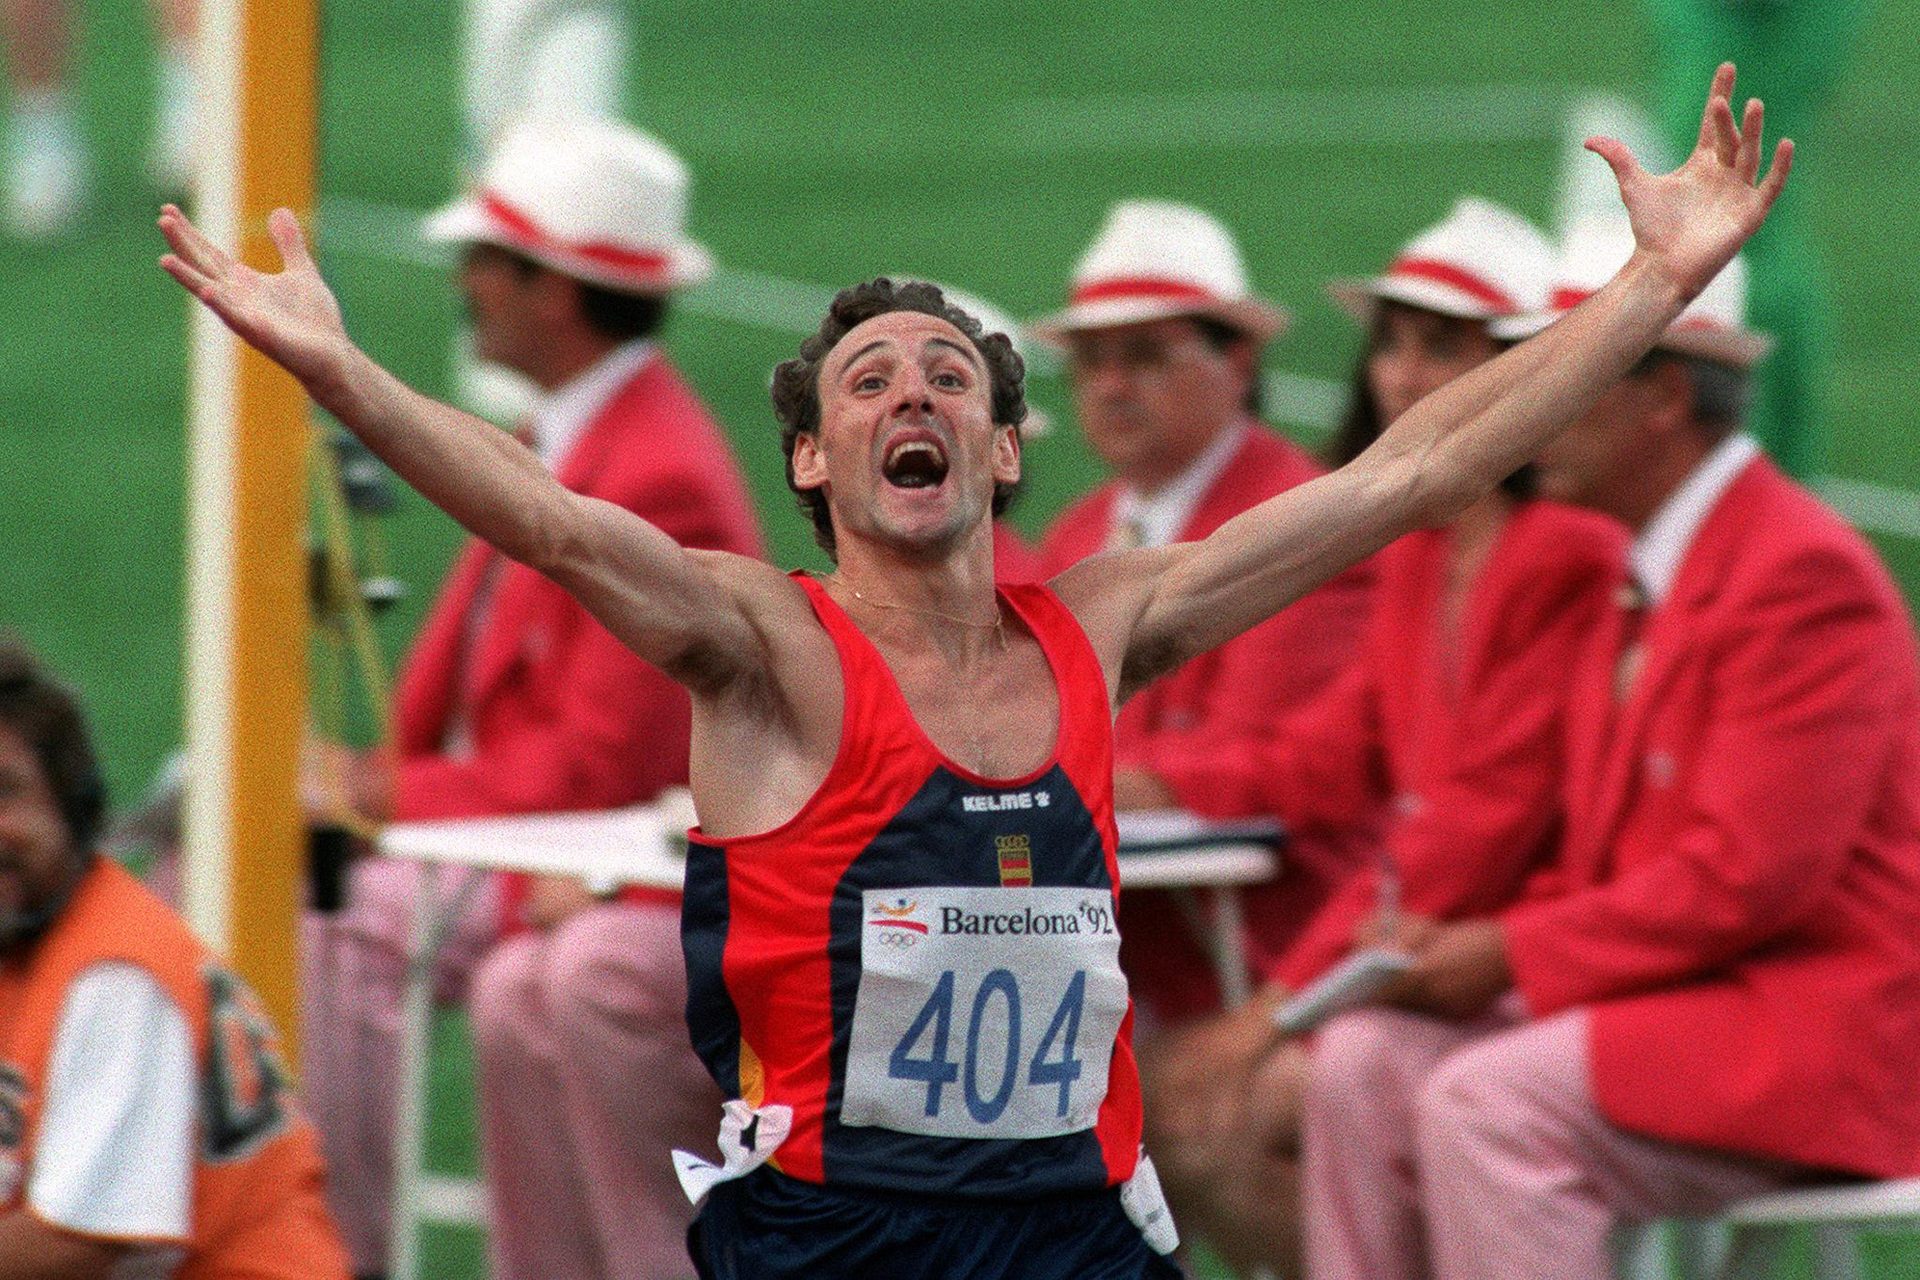 Qué fue de Fermín Cacho: el héroe del atletismo español en Barcelona’92